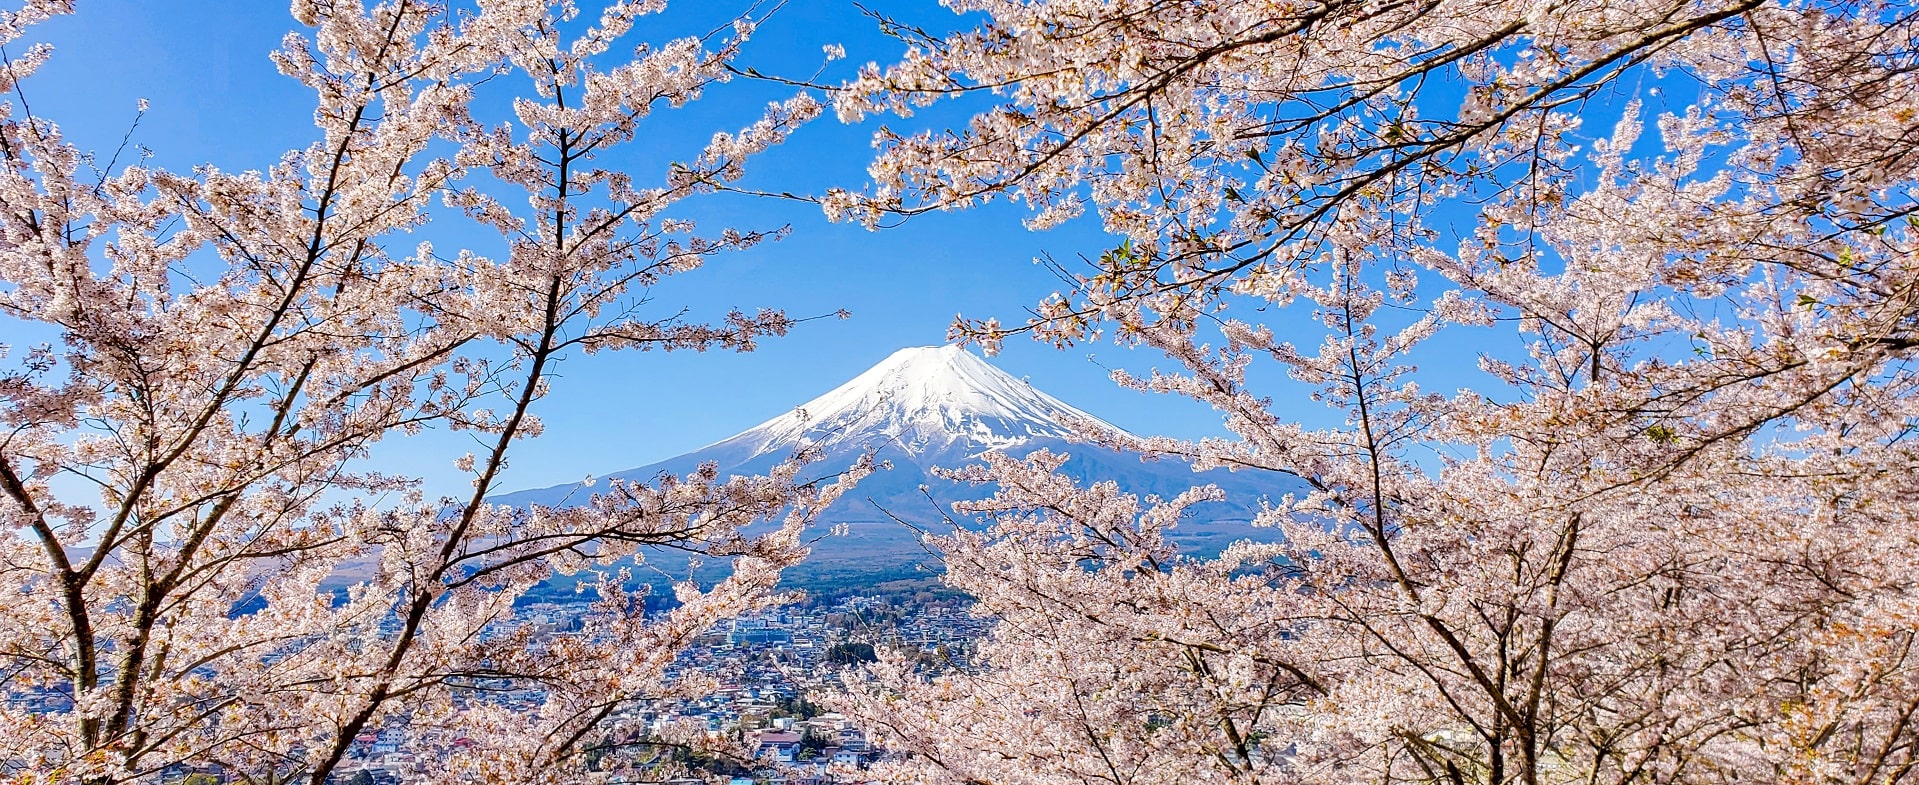 Vue du Mont Fuji avec cerisiers en fleurs au premier plan